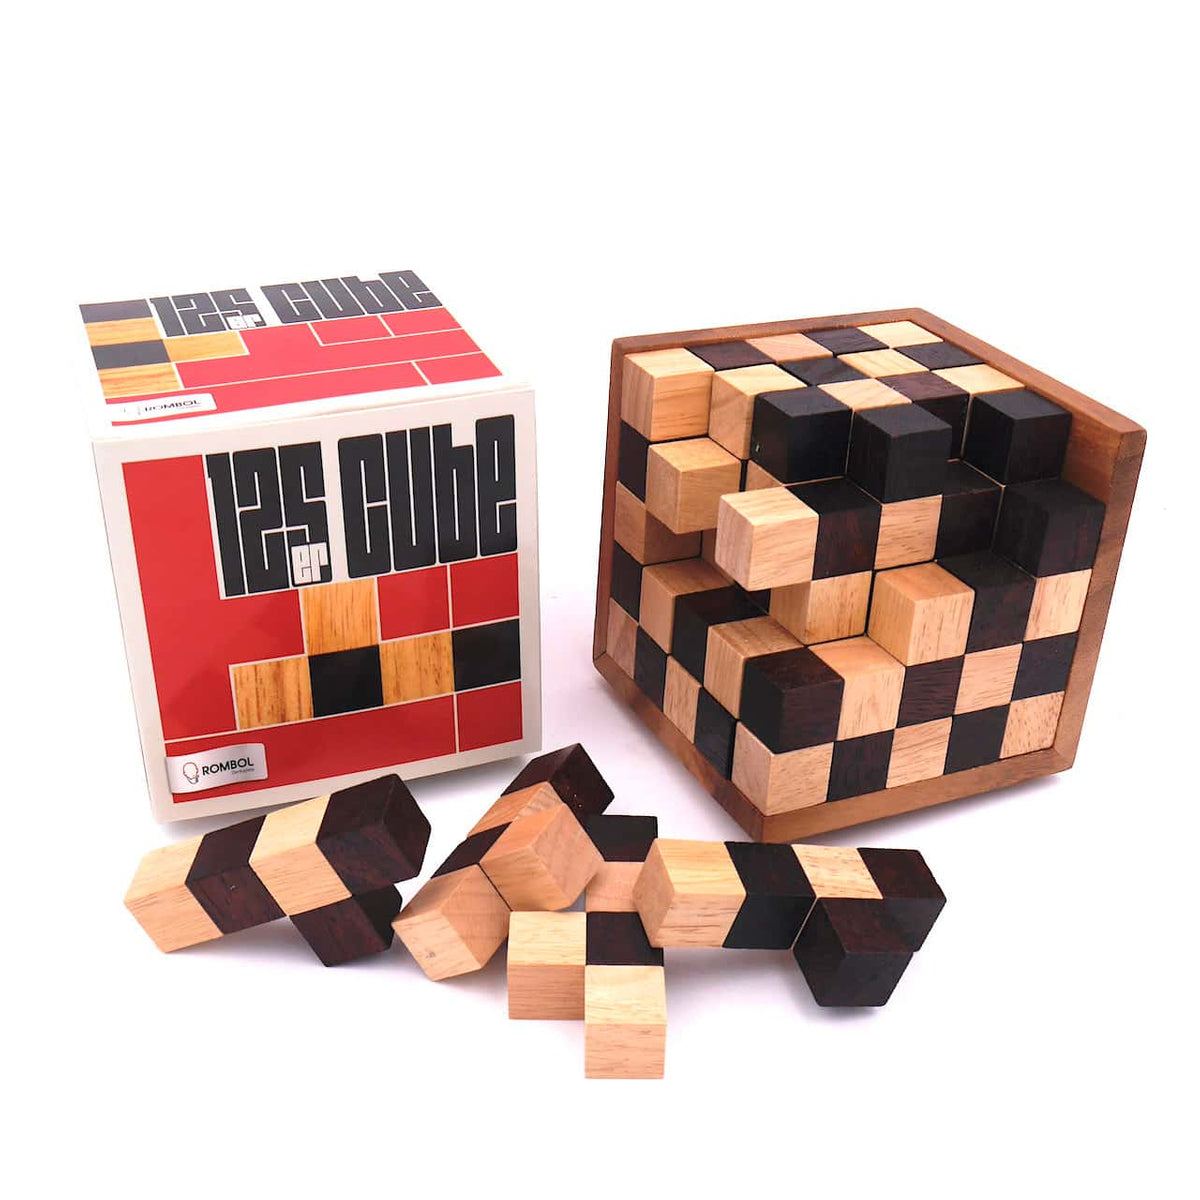 125er-Cube - herausforderndes Denkspiel aus edlem Holz für Knobel-Fans